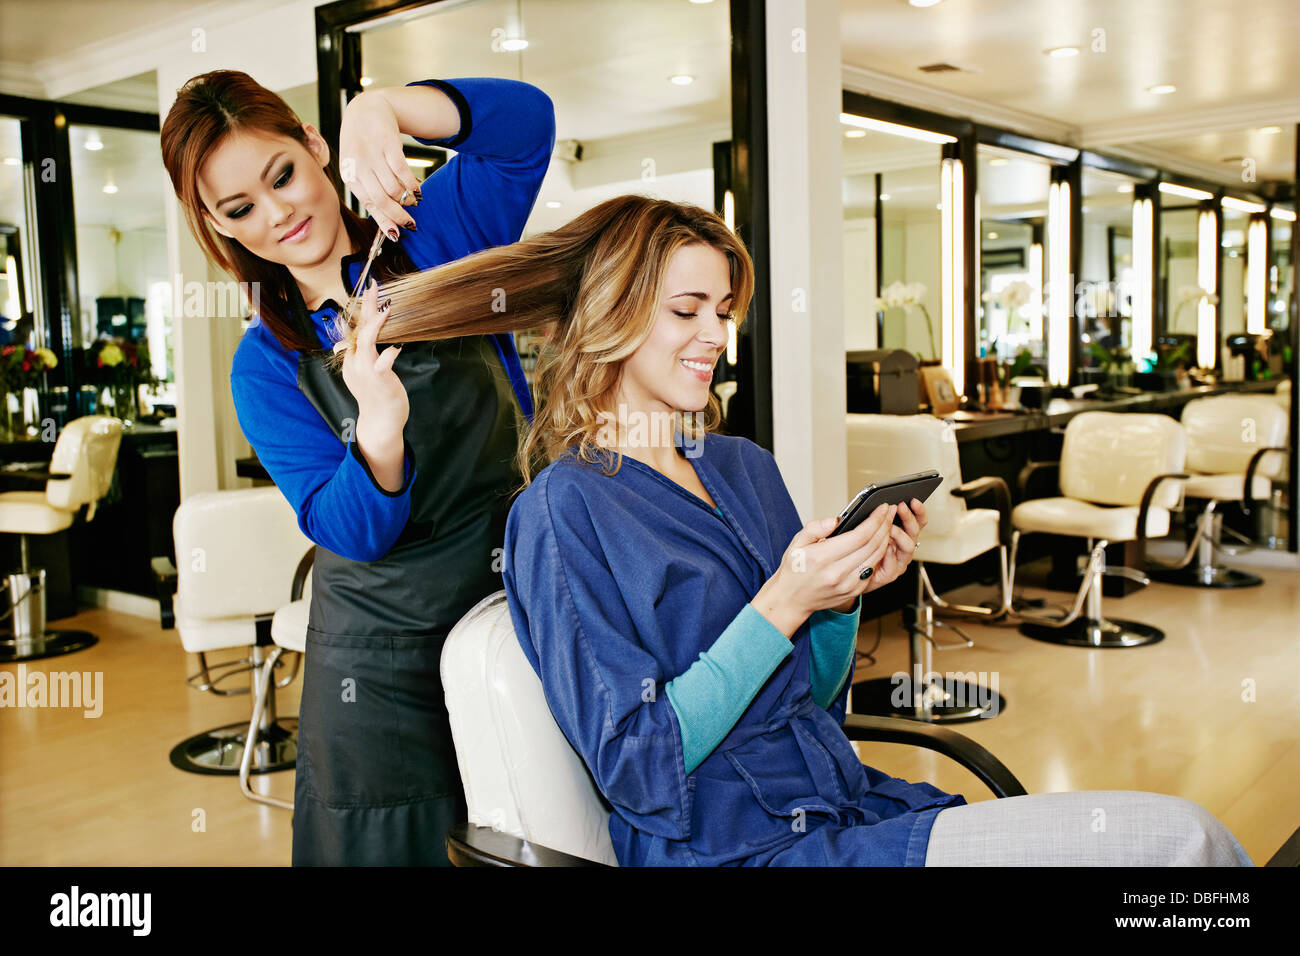 Hair cut in salon Banque D'Images